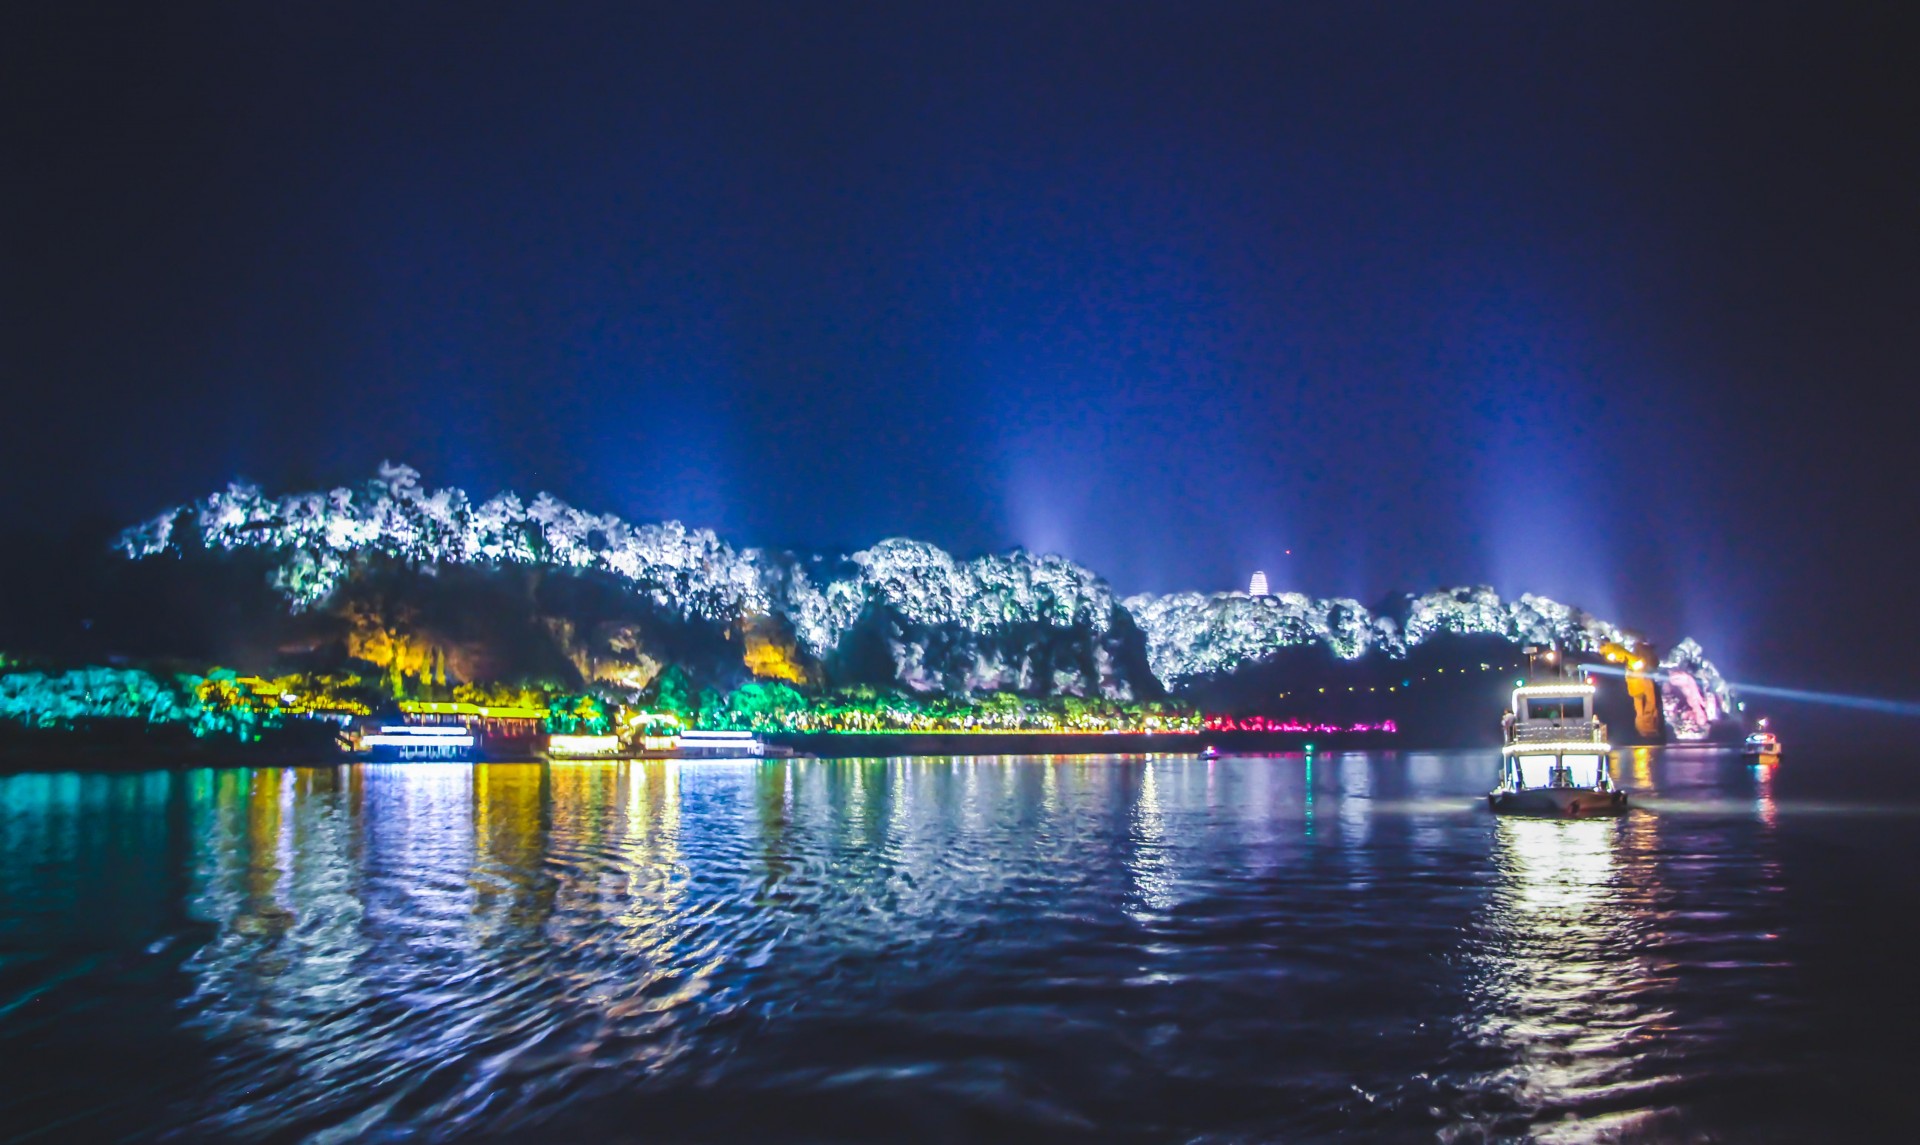 坐在游船上看乐山的夜景简直美到爆!